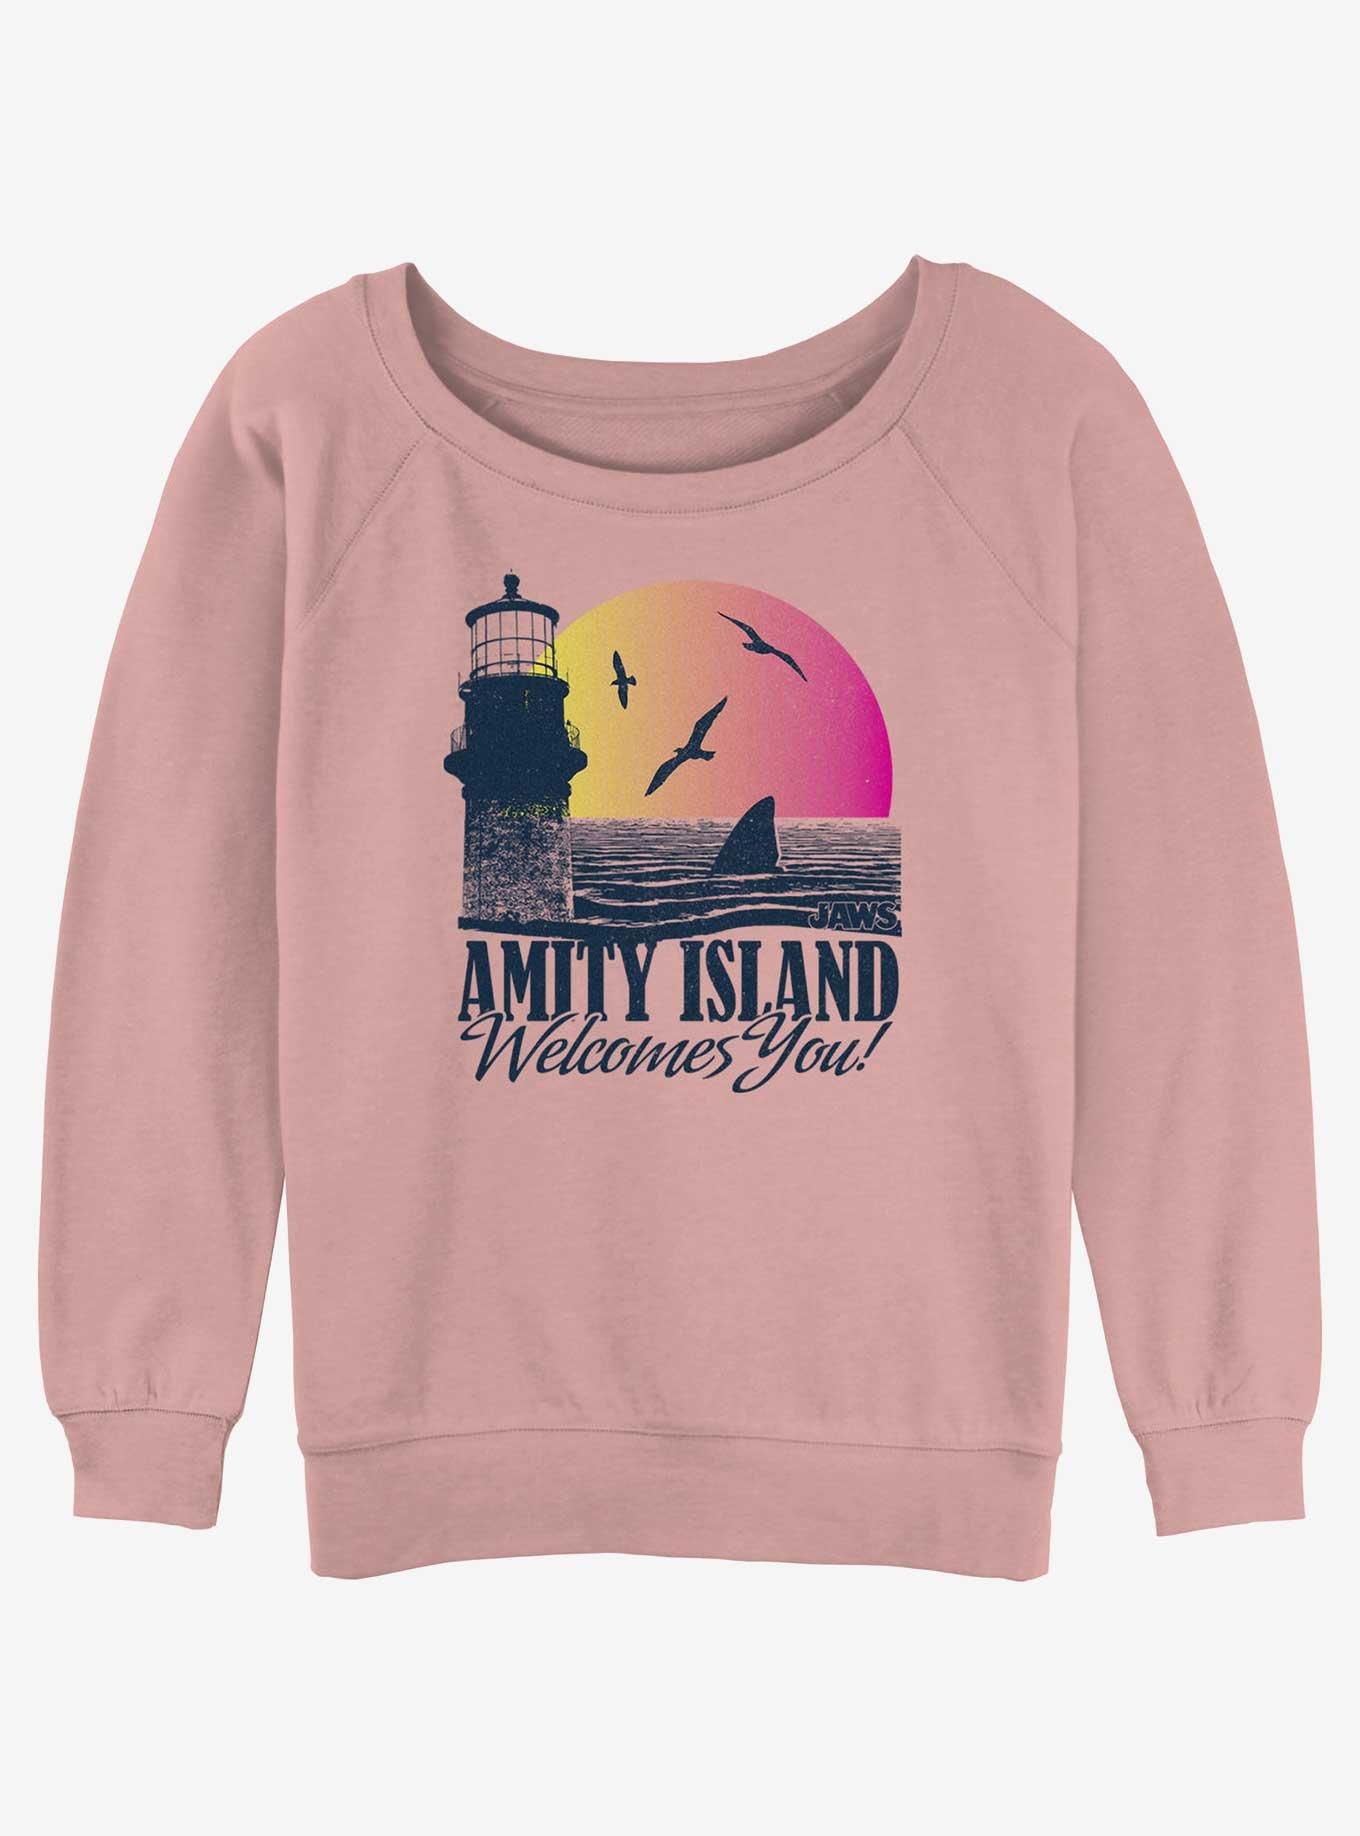 Jaws Amity Island Welcomes You Girls Slouchy Sweatshirt